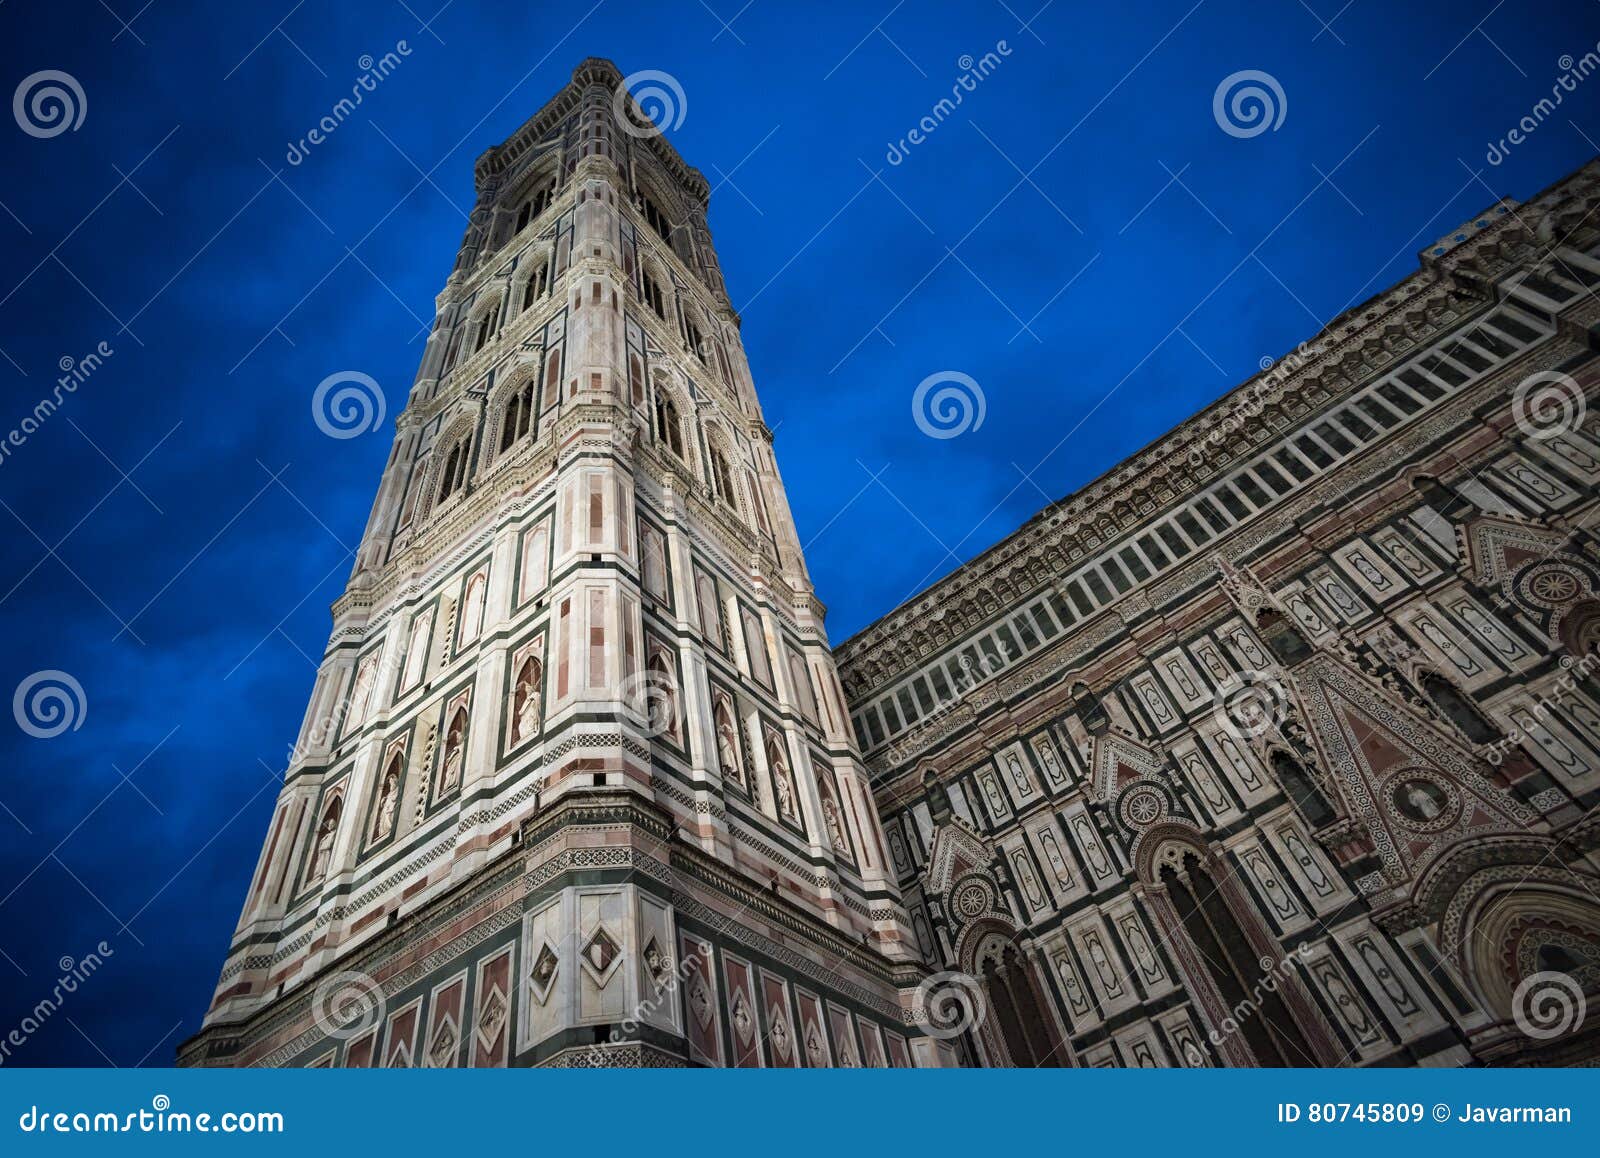 giotto`s campanile and santa maria del fiore cathedral, florence